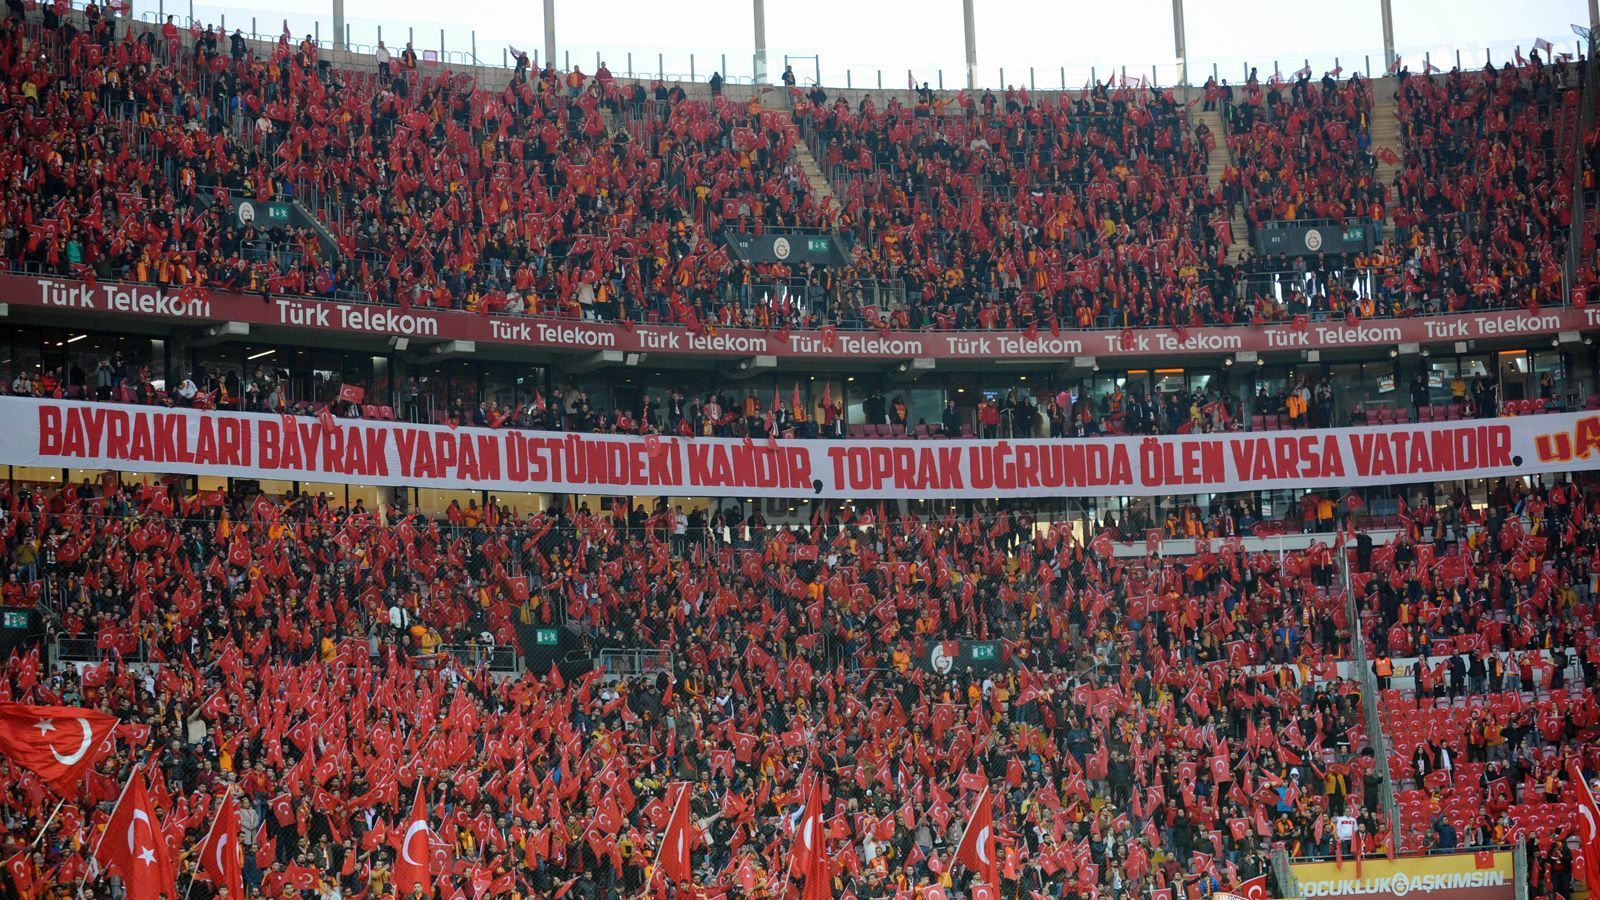 
                <strong>Fußball-Fans</strong><br>
                Zum Vergleich der Fußball: Hier liegt aktuell das Turk Telekom Stadium von Galatasaray Istanbul mit 131 Dezibel ganz vorne.
              